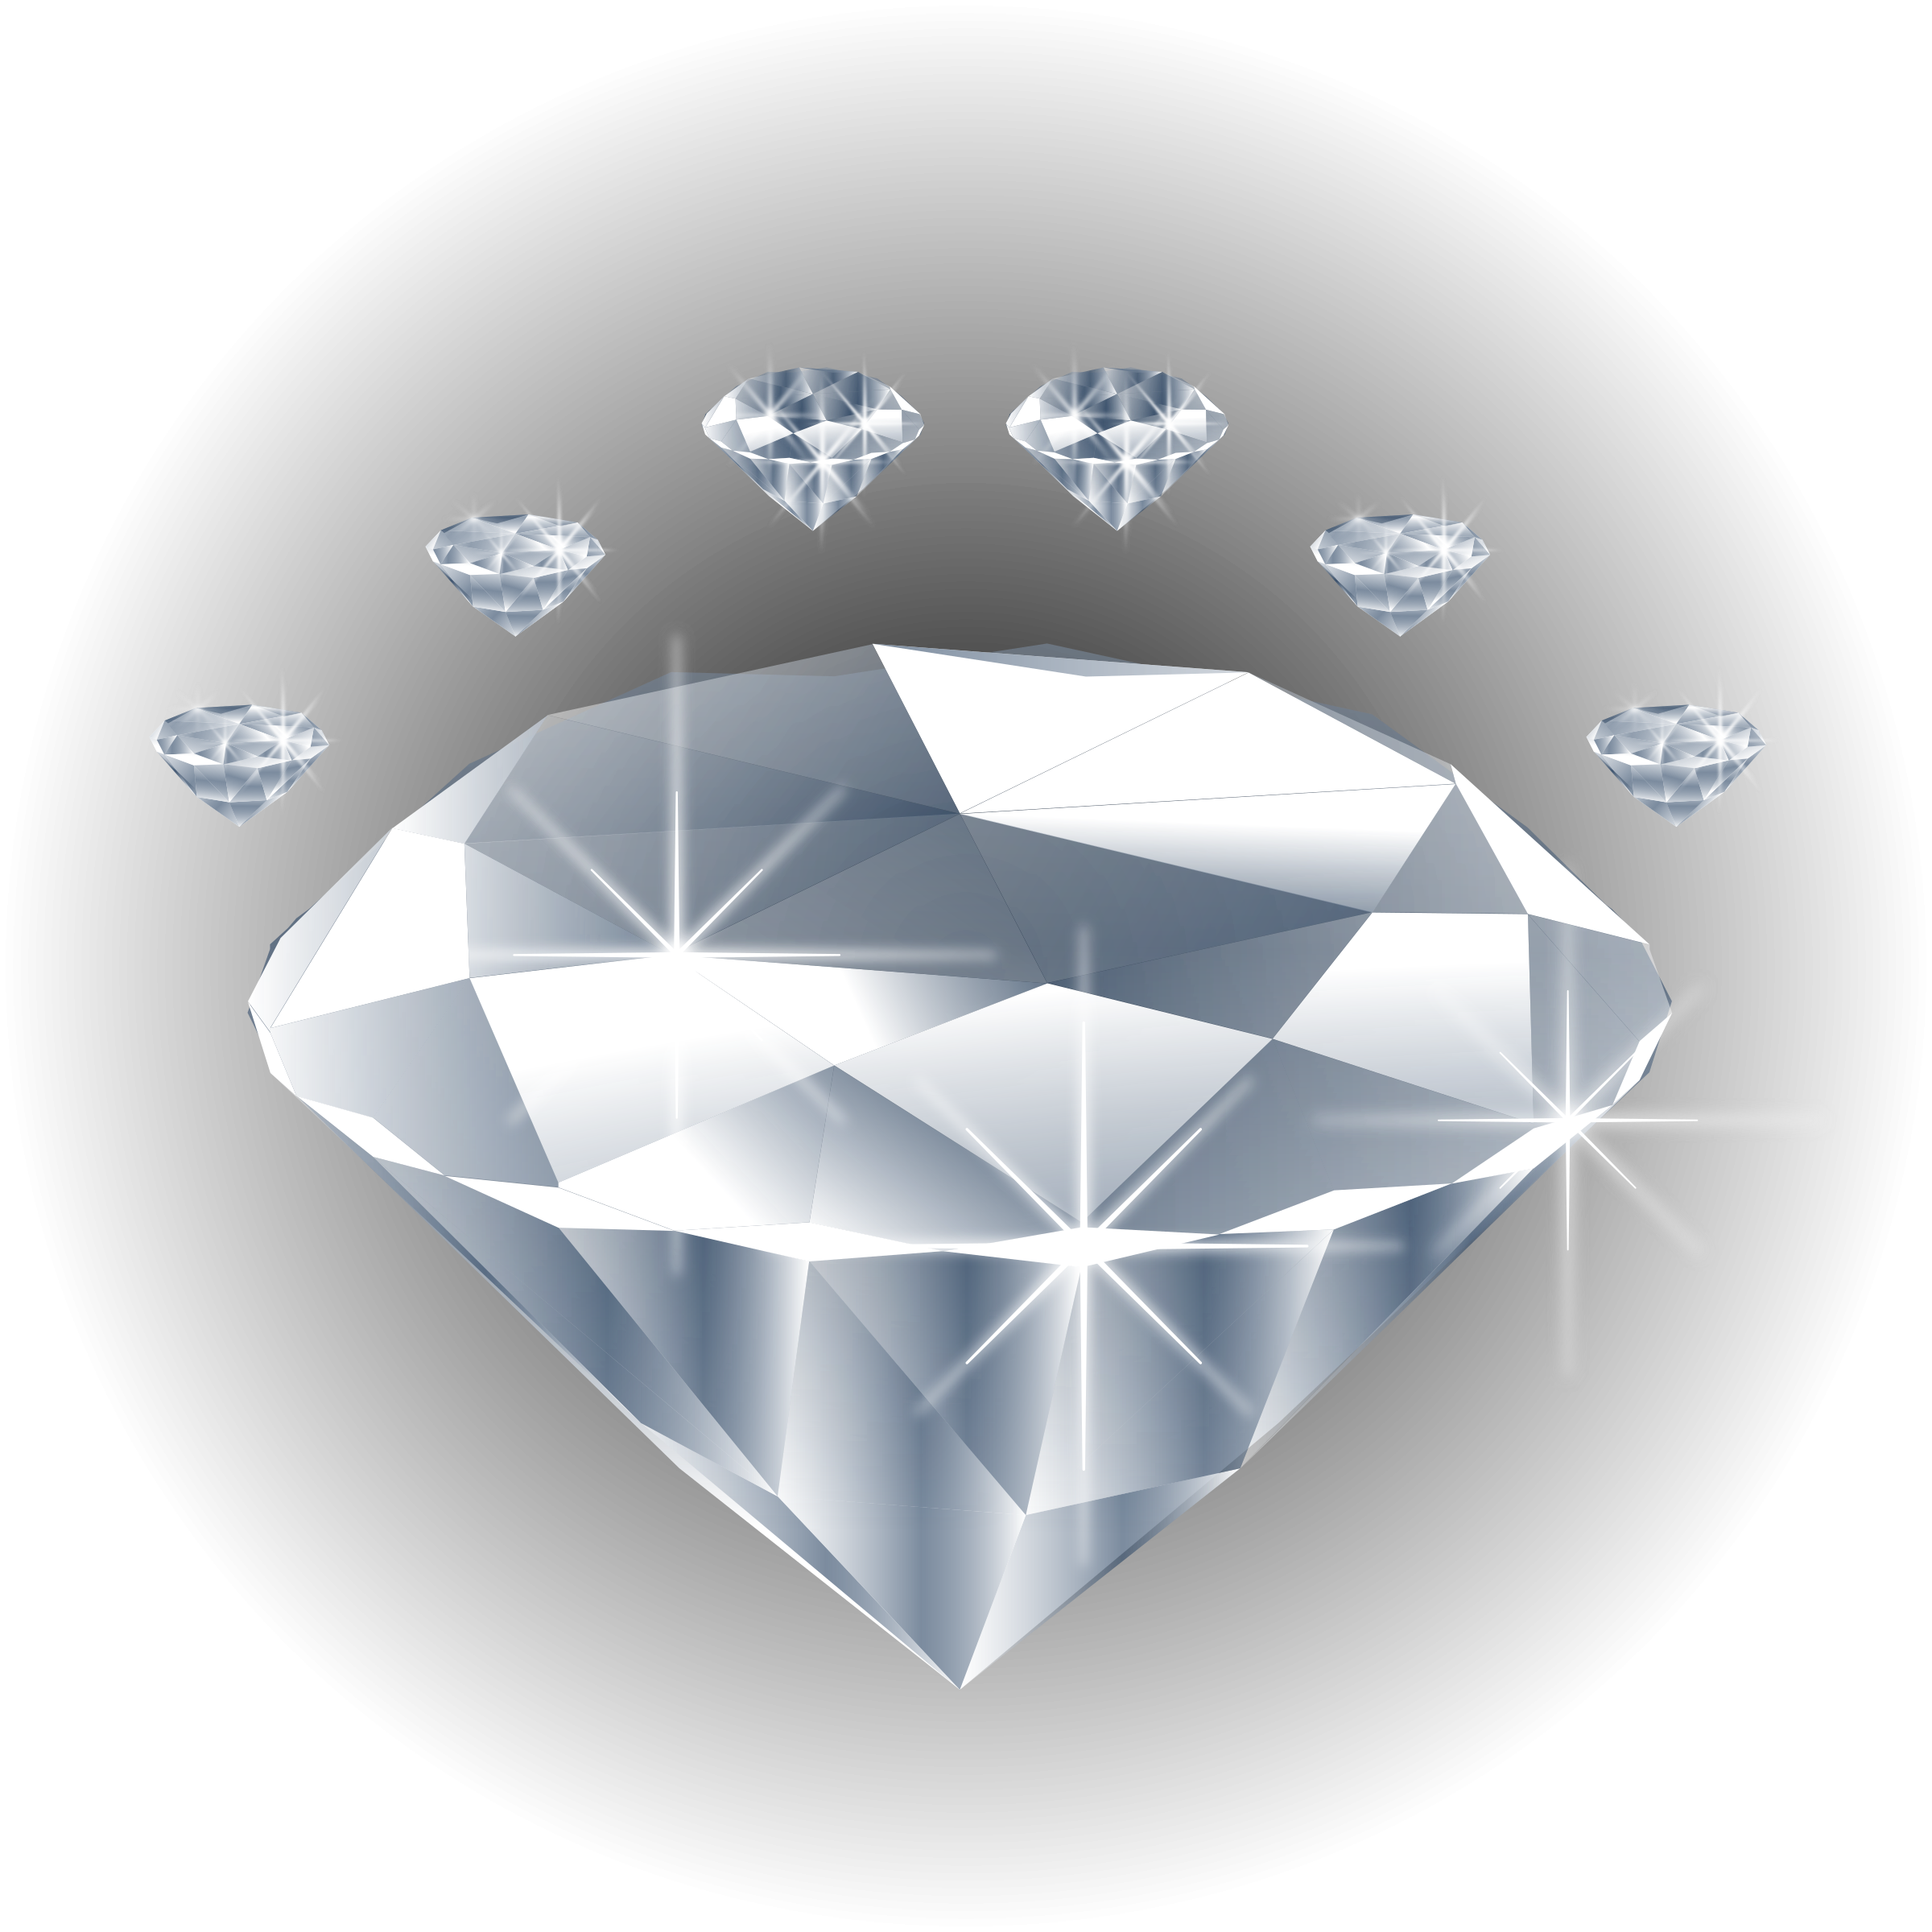 Diamond crystal. Кристал диамонд.